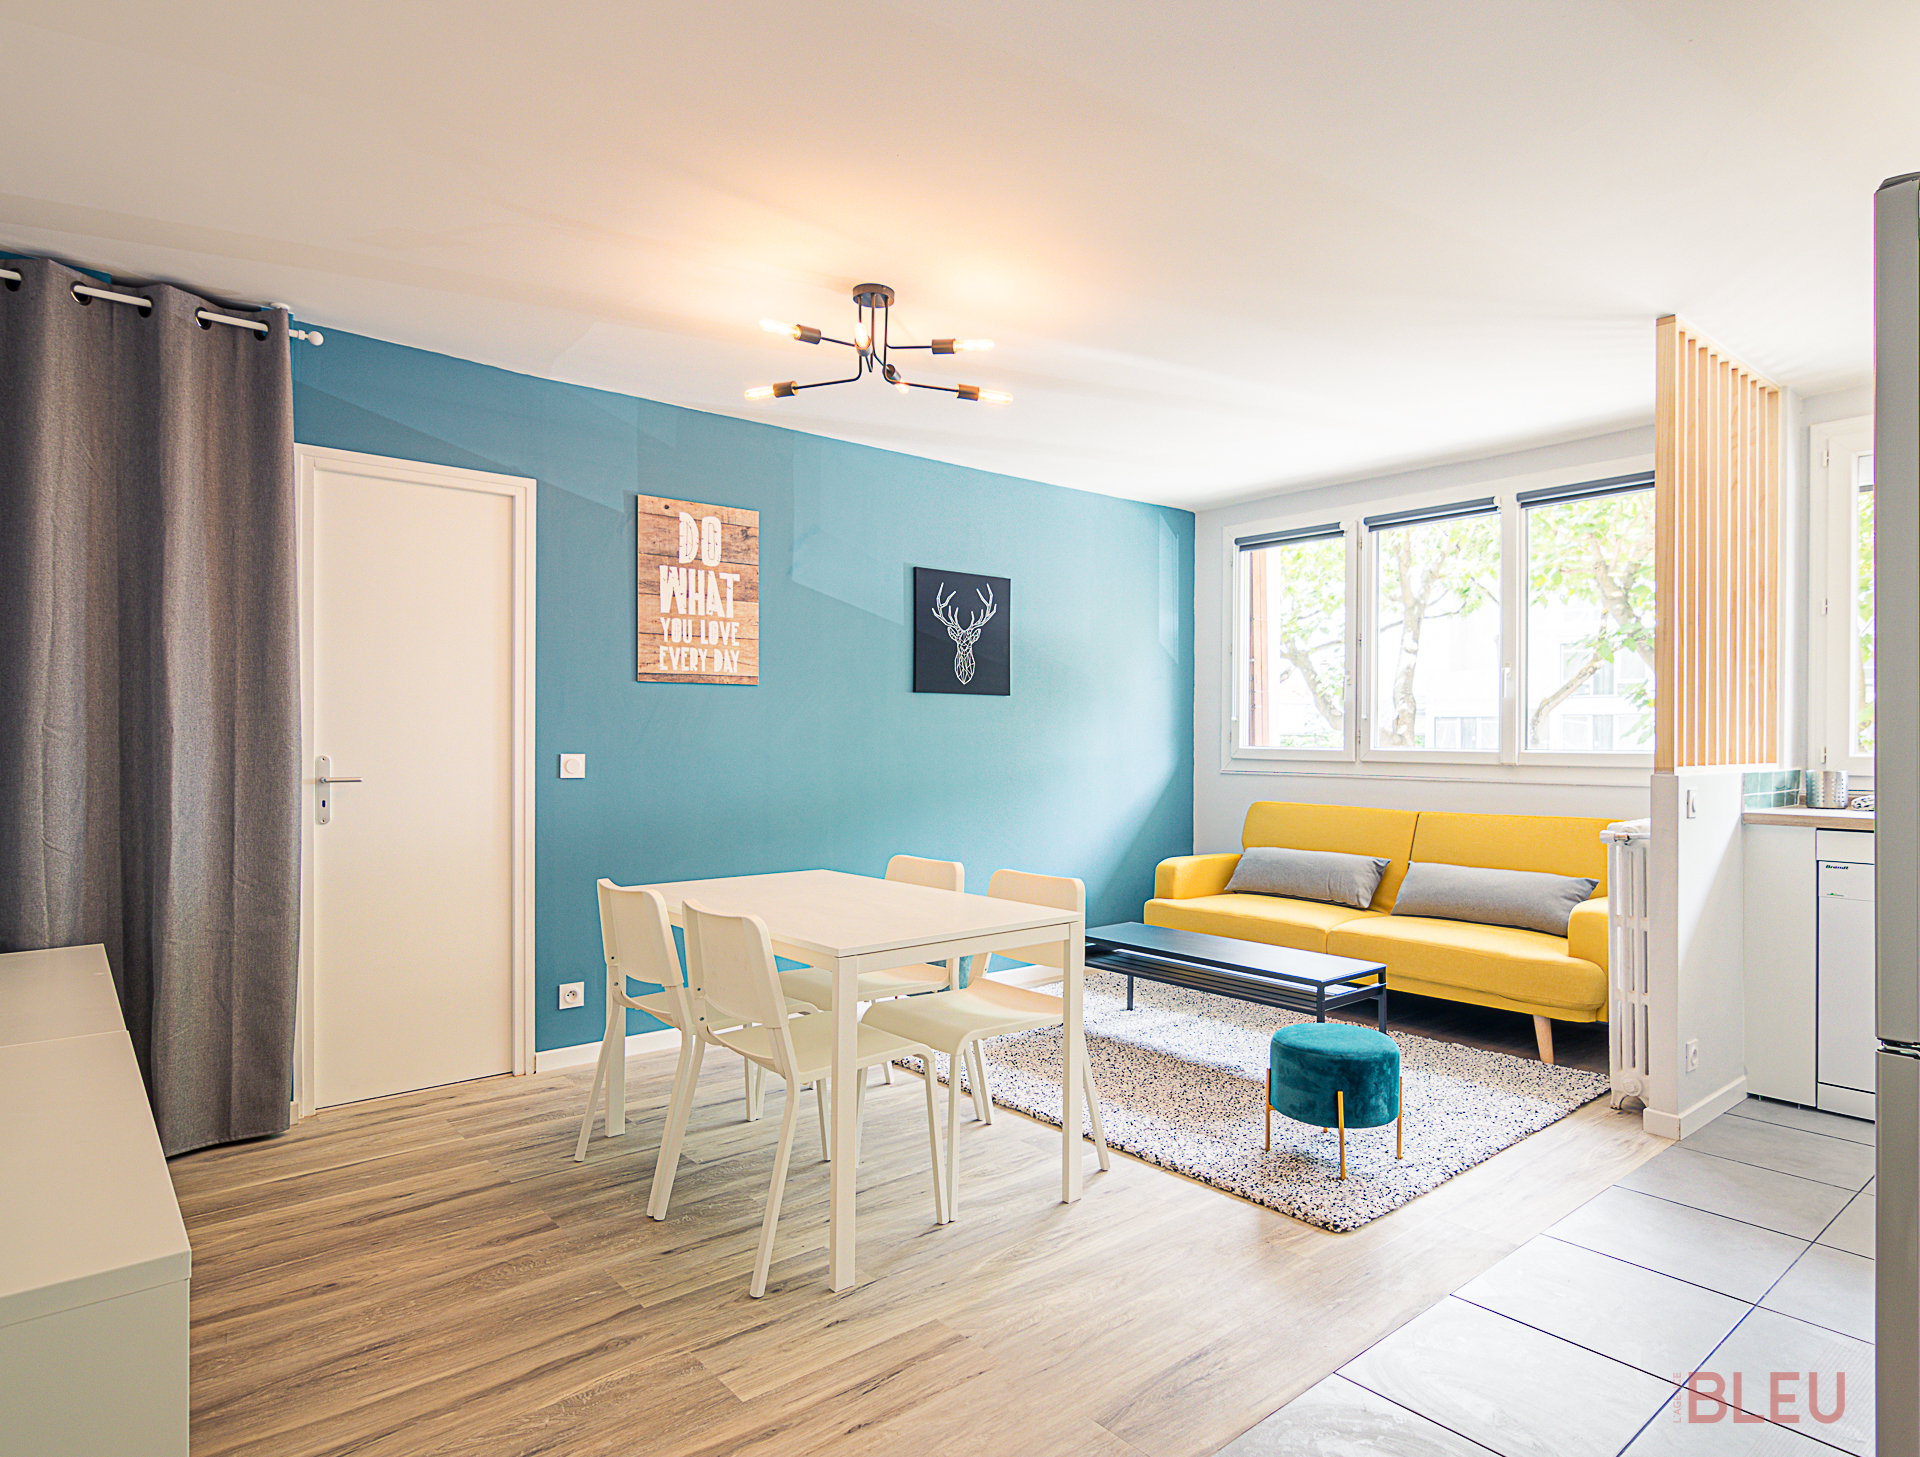 Espace de vie lumineux et moderne avec coin repas et salon coloré dans un appartement à Paris, conçu par un architecte d'intérieur.